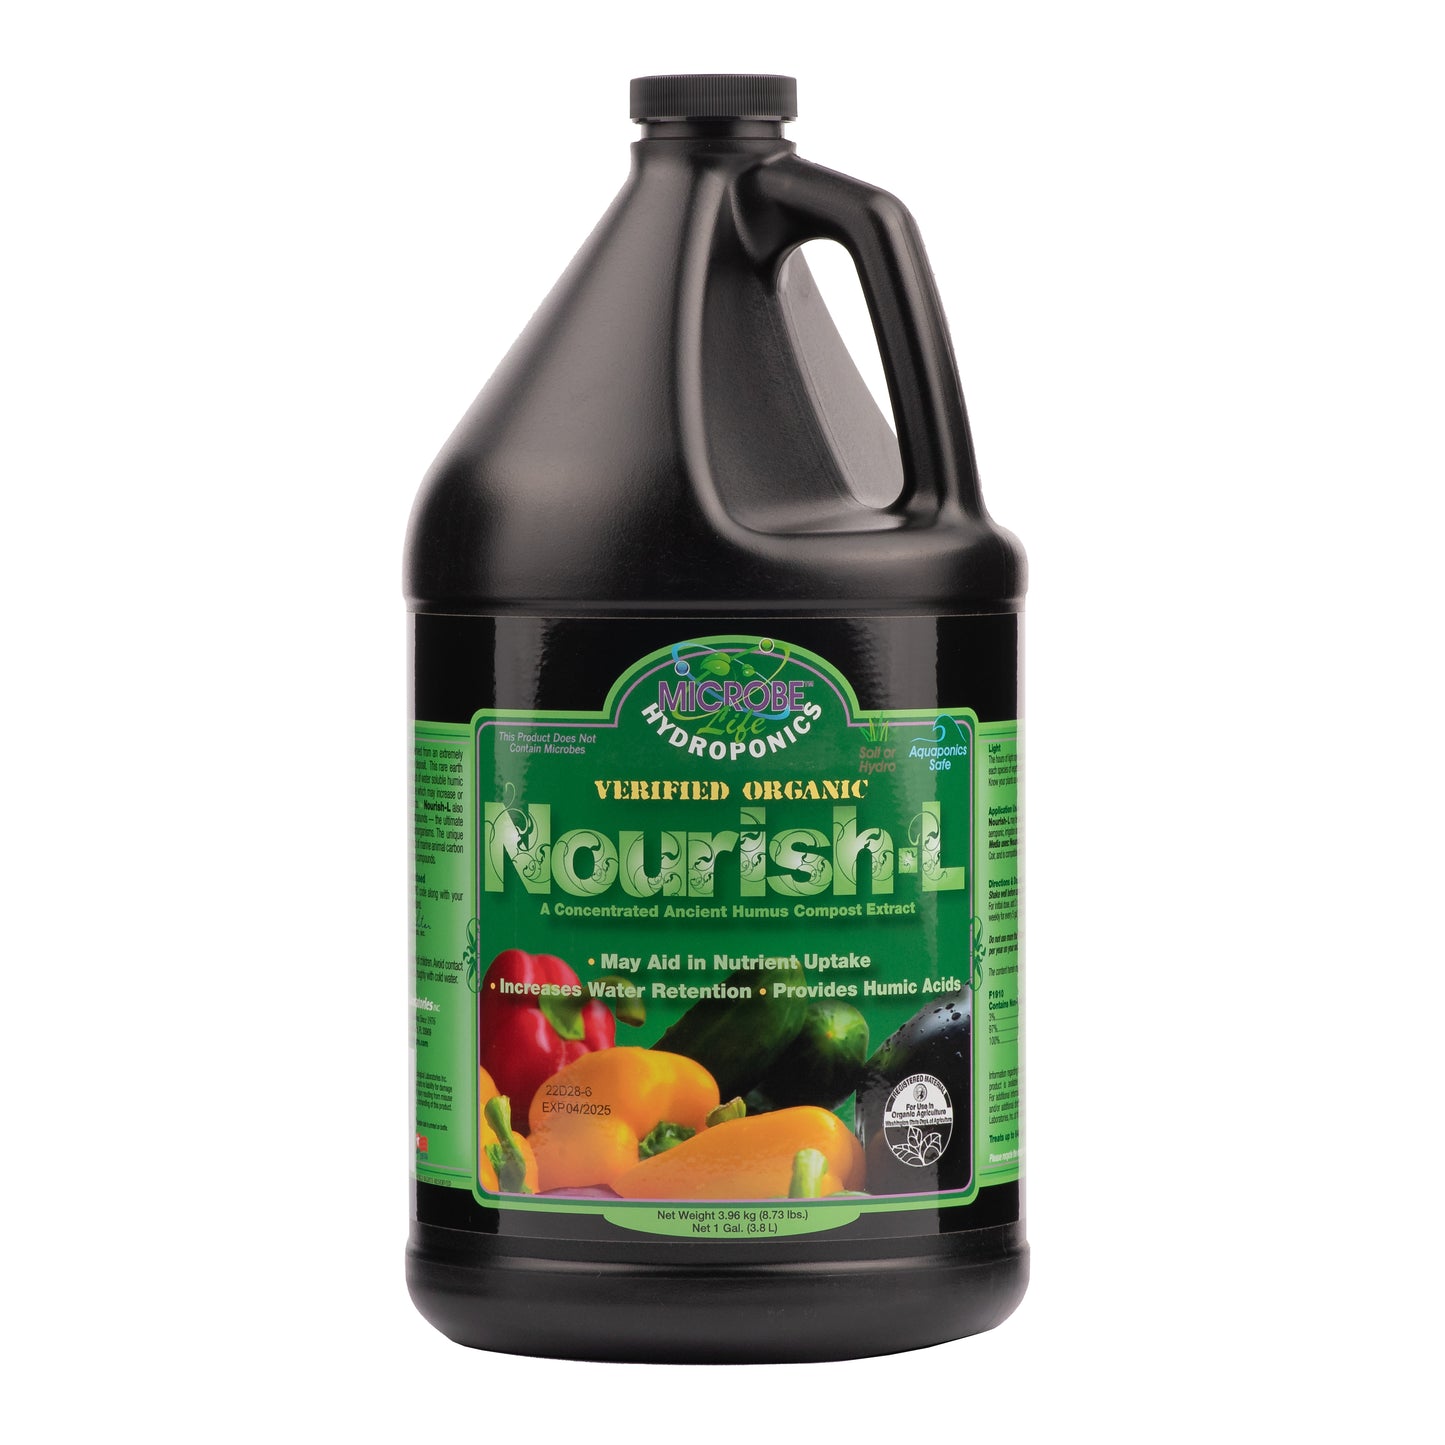 Nourish-L by Microbe Life Hydroponics, 1 gallon